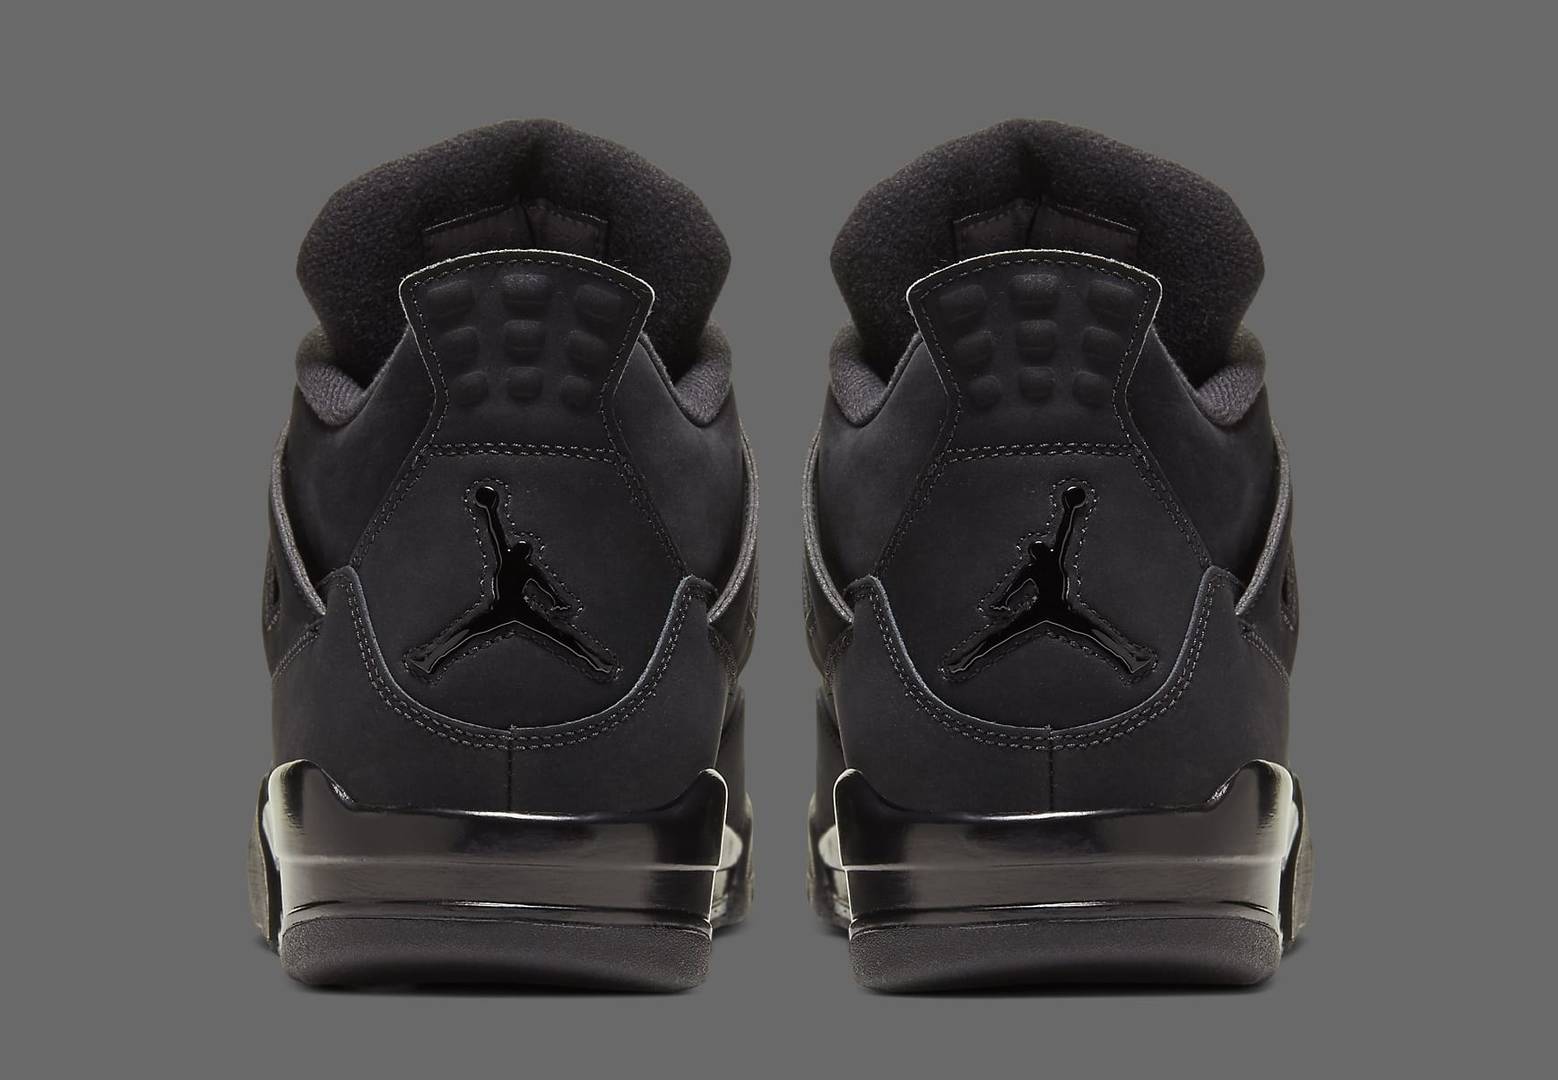 Air Jordan 4 “Black Cat” Releasing Early Via Nike: Official